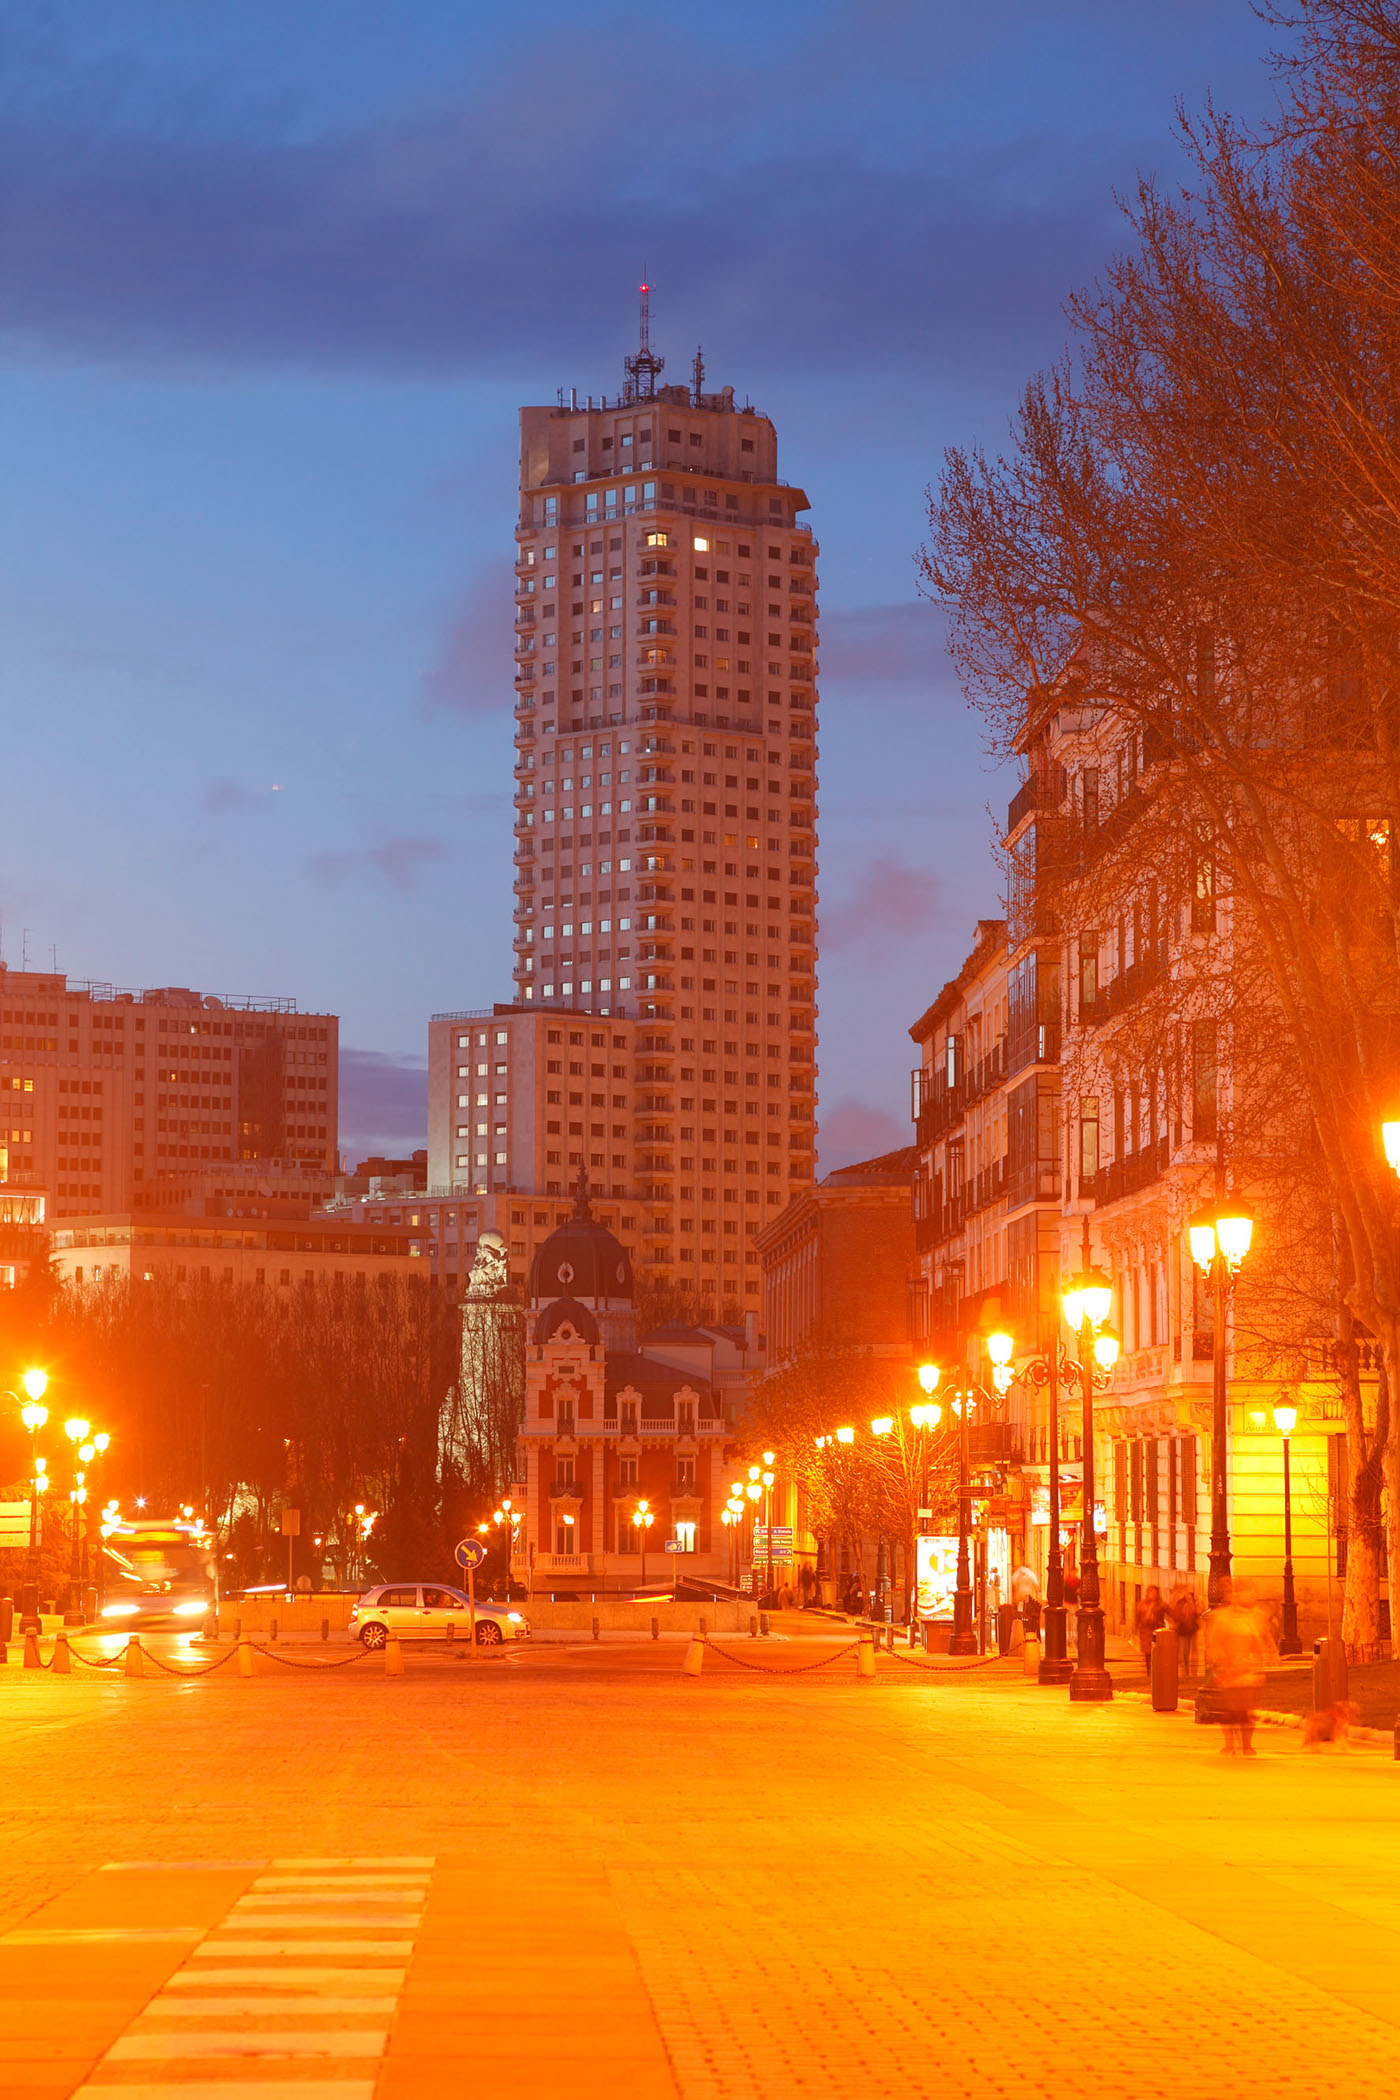 spain spanien city segovia madrid architecture granada sevilla malaga cordoba